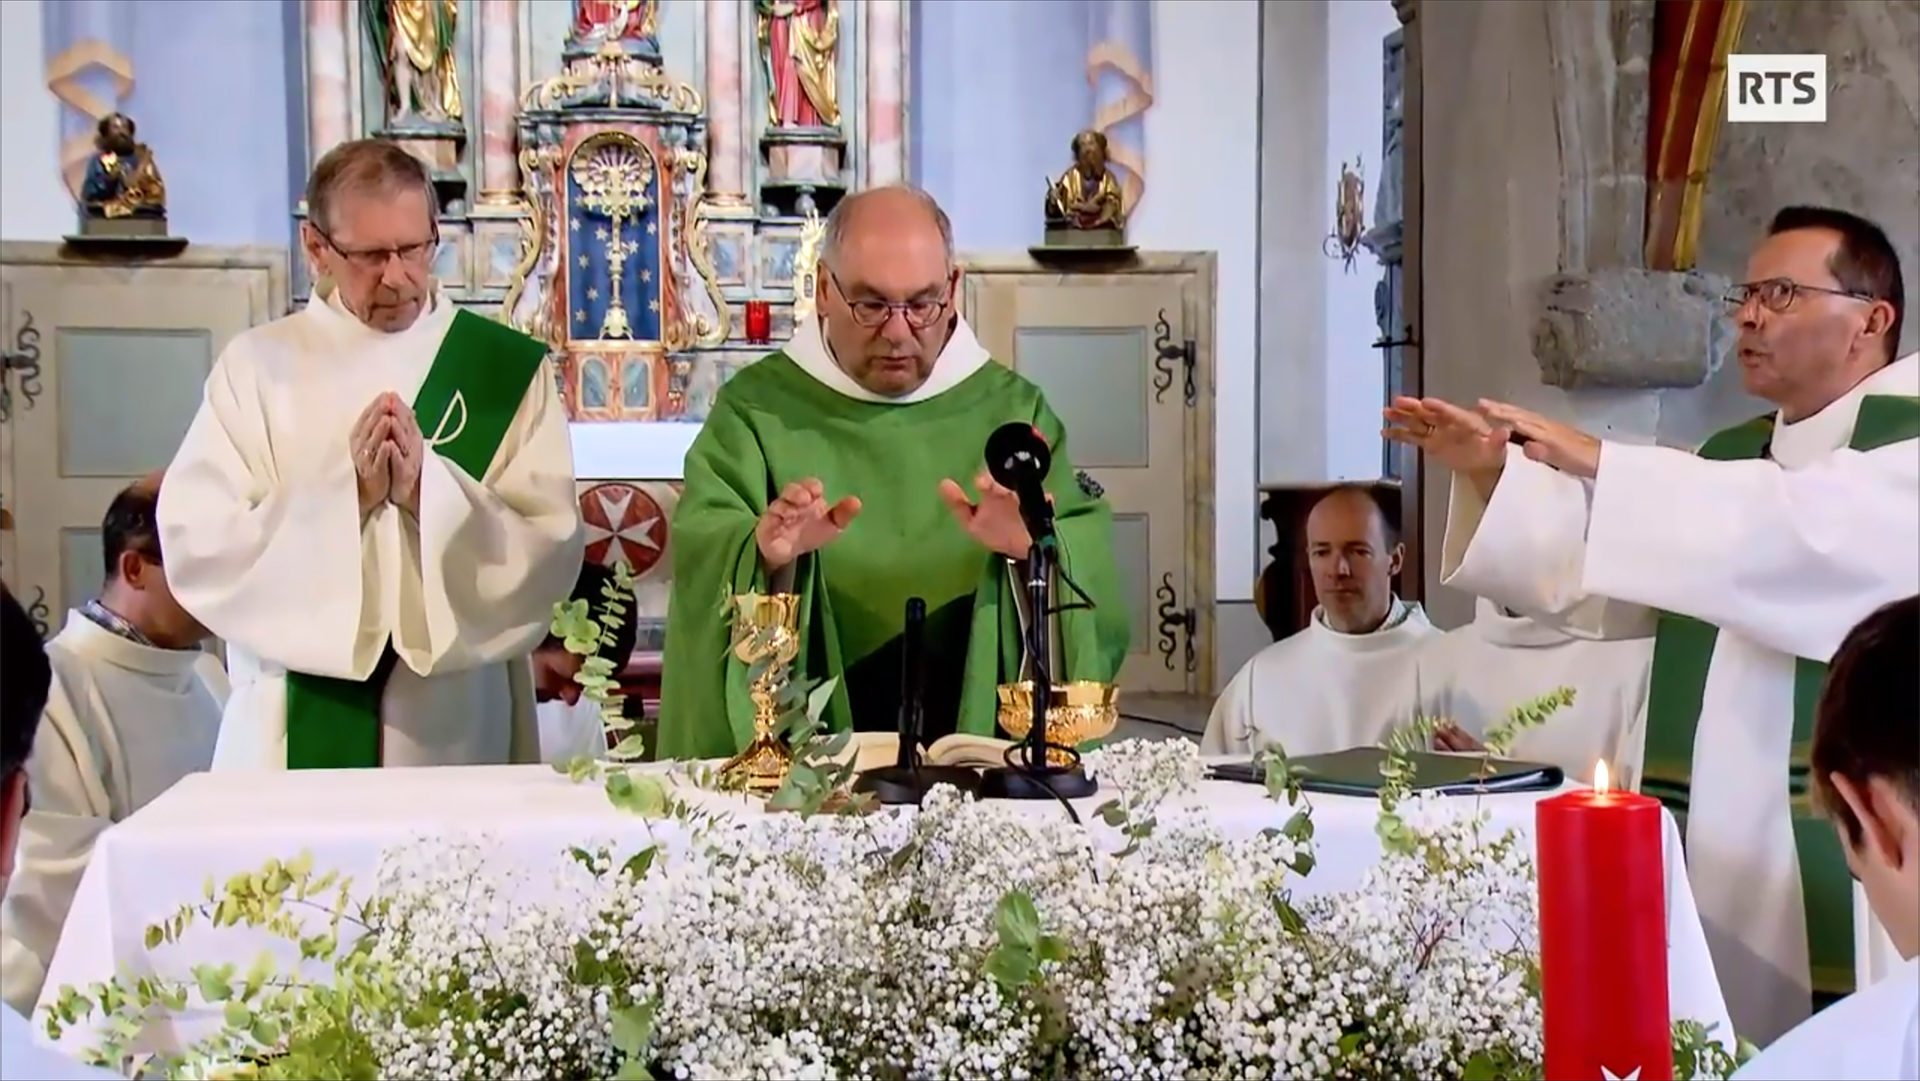 La messe en streaming le 1er septembre 2019 à l'église St-Jean, à Fribourg | capture d'écran RTS.ch